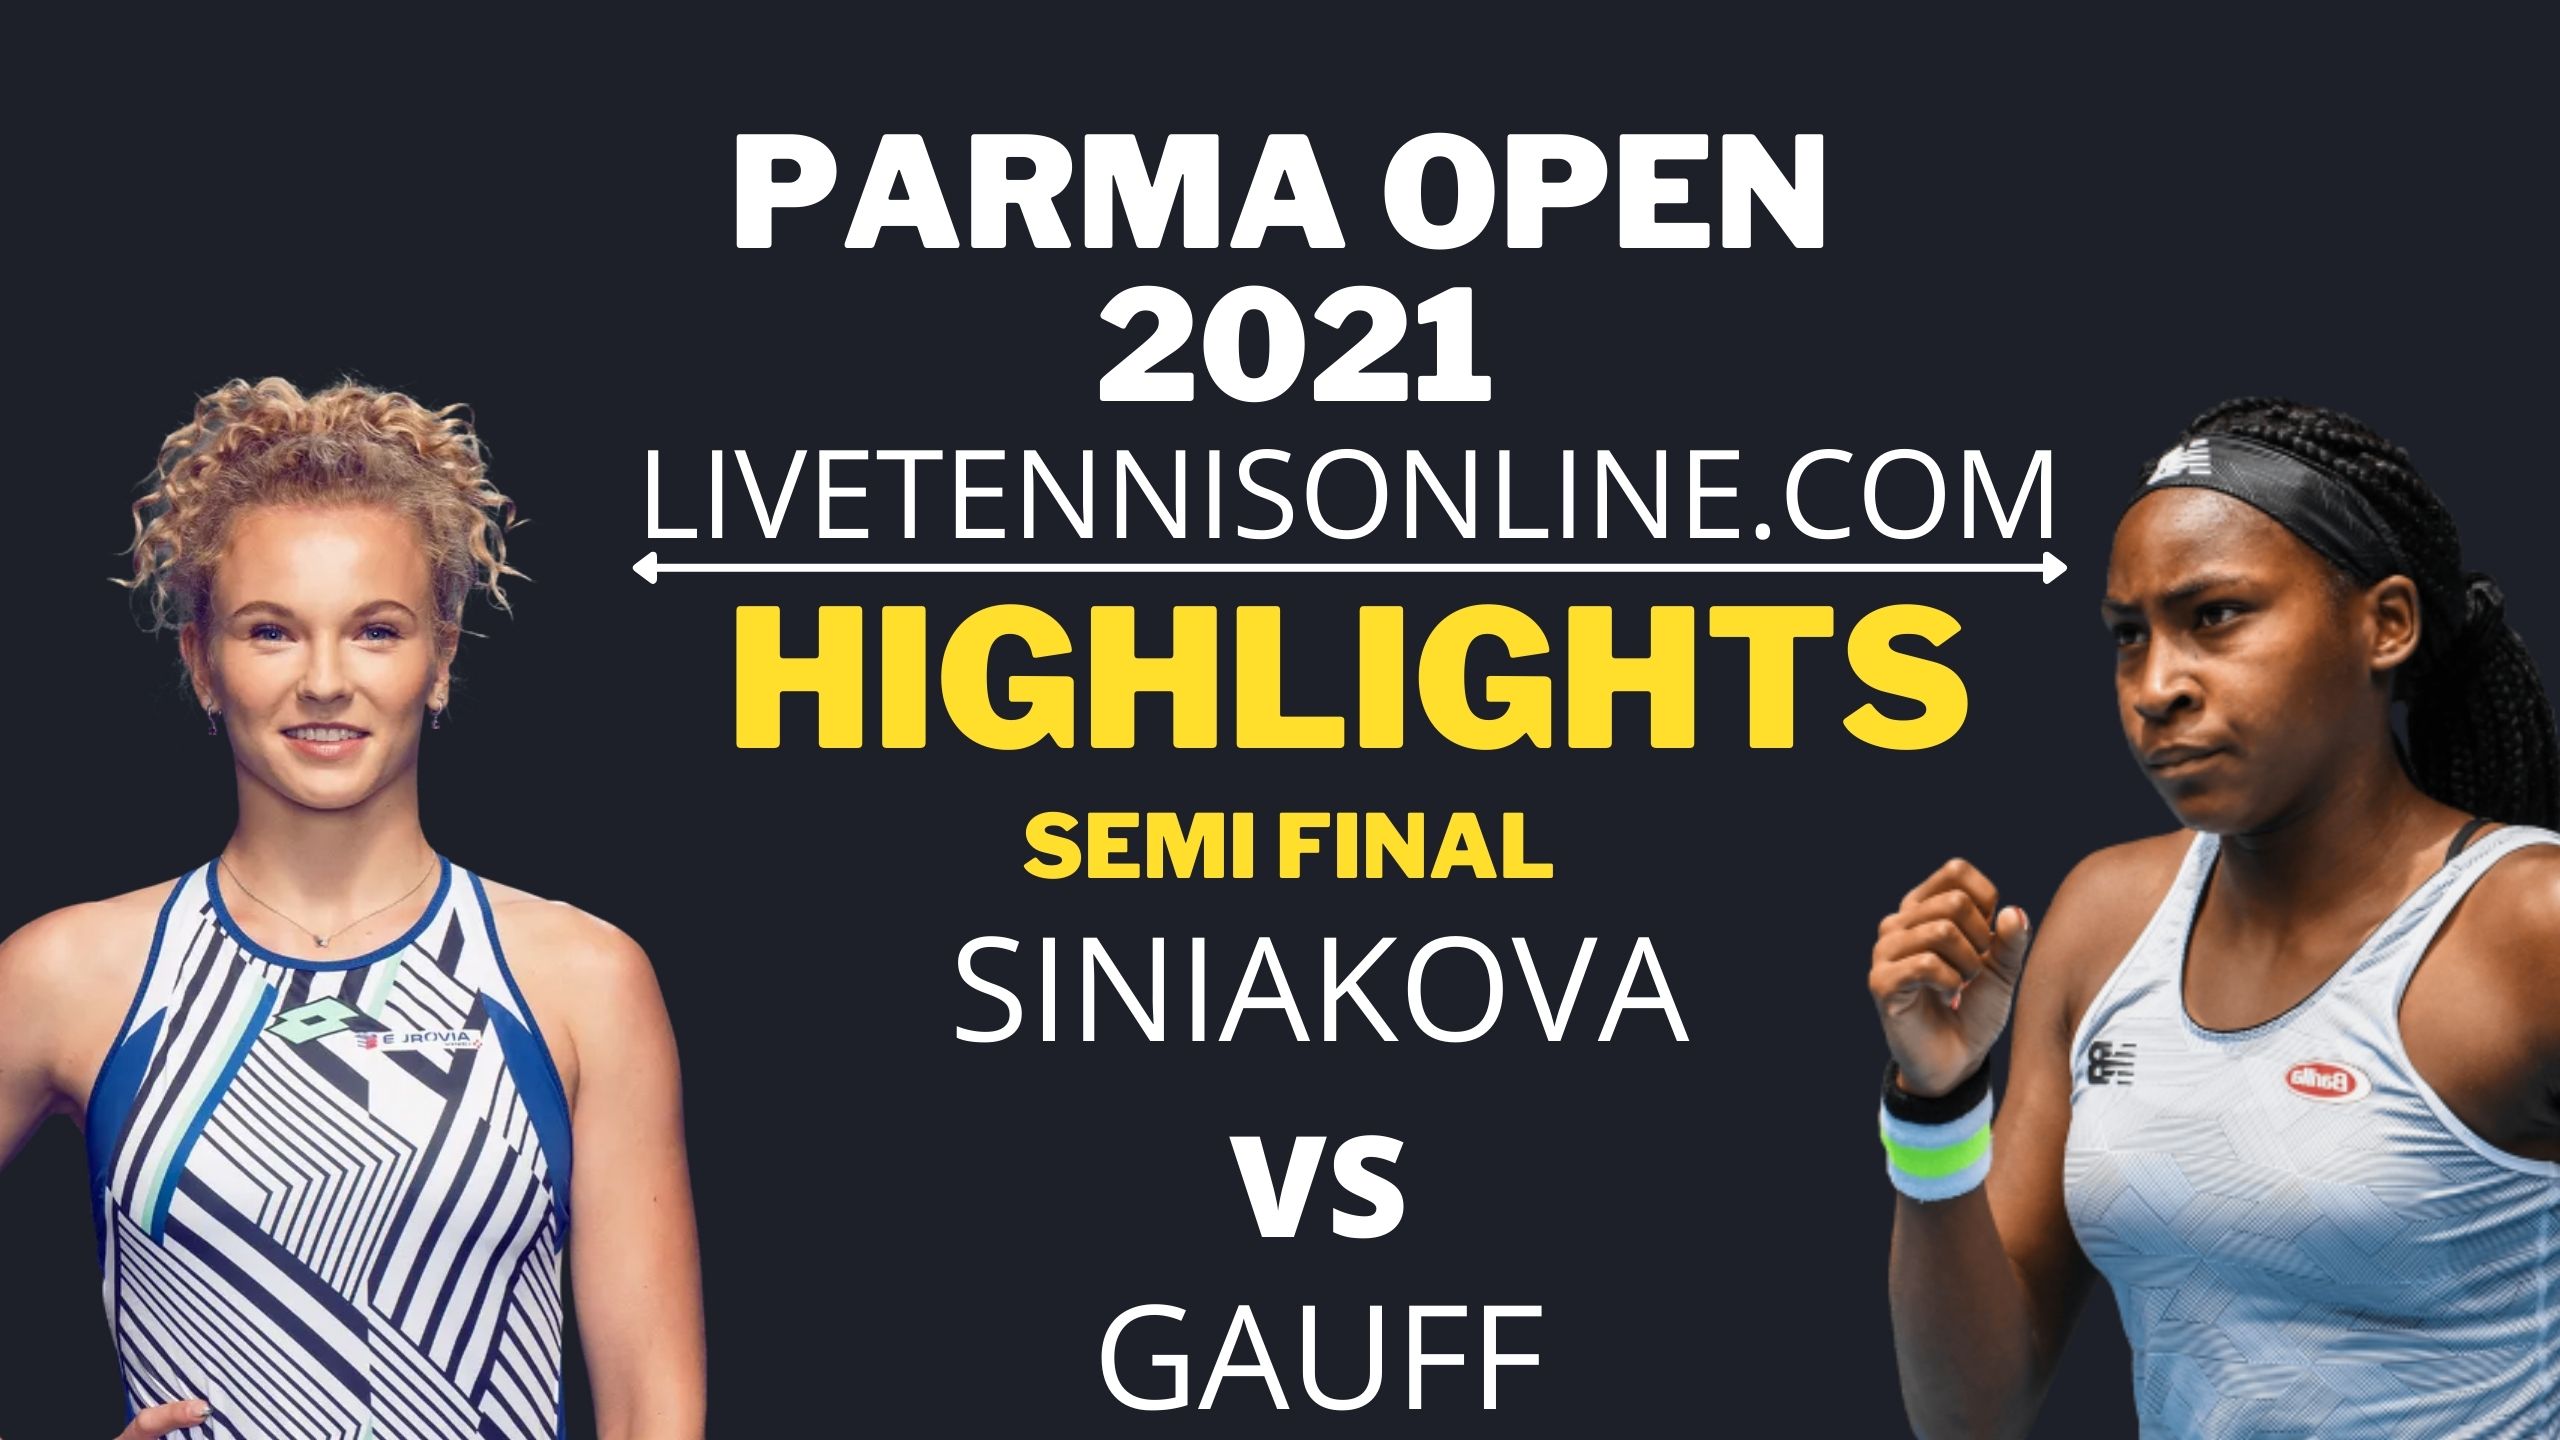 Siniakova Vs Gauff Semi Final Highlights 2021